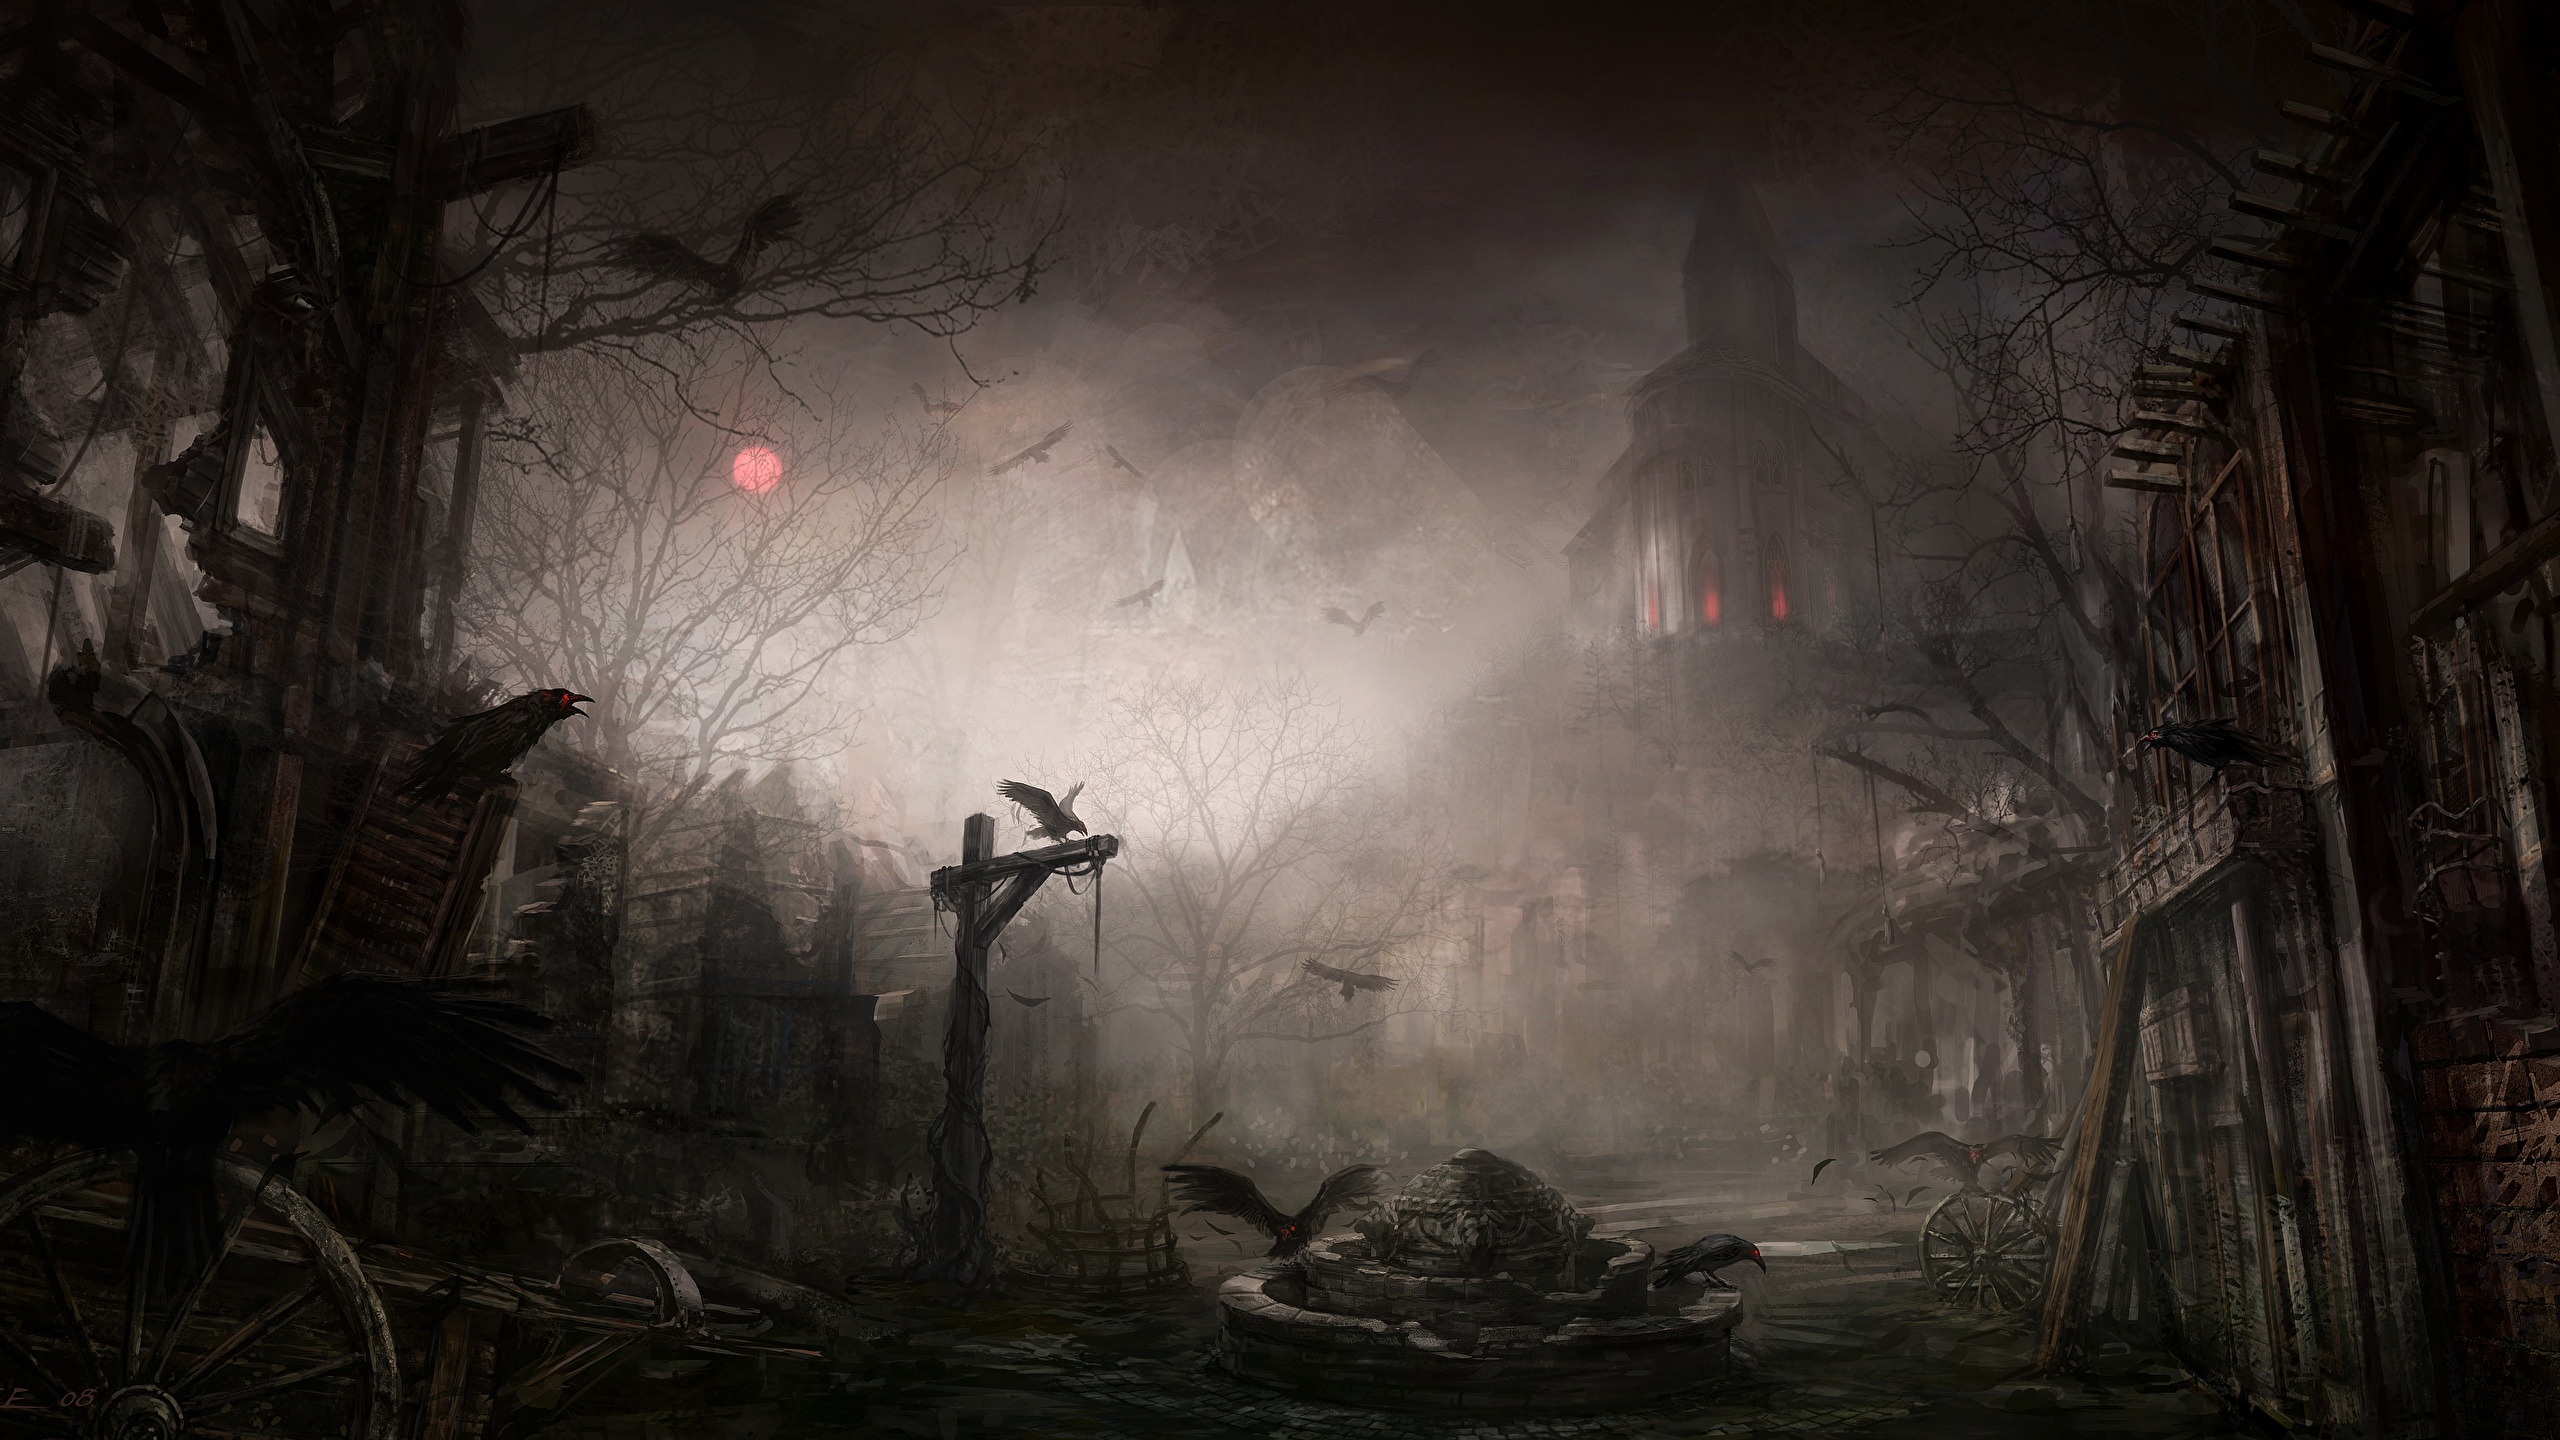 Diablo III Вороны Готика Фэнтези Ночь Игры Фэнтези фото 2560x1440 компьютер...